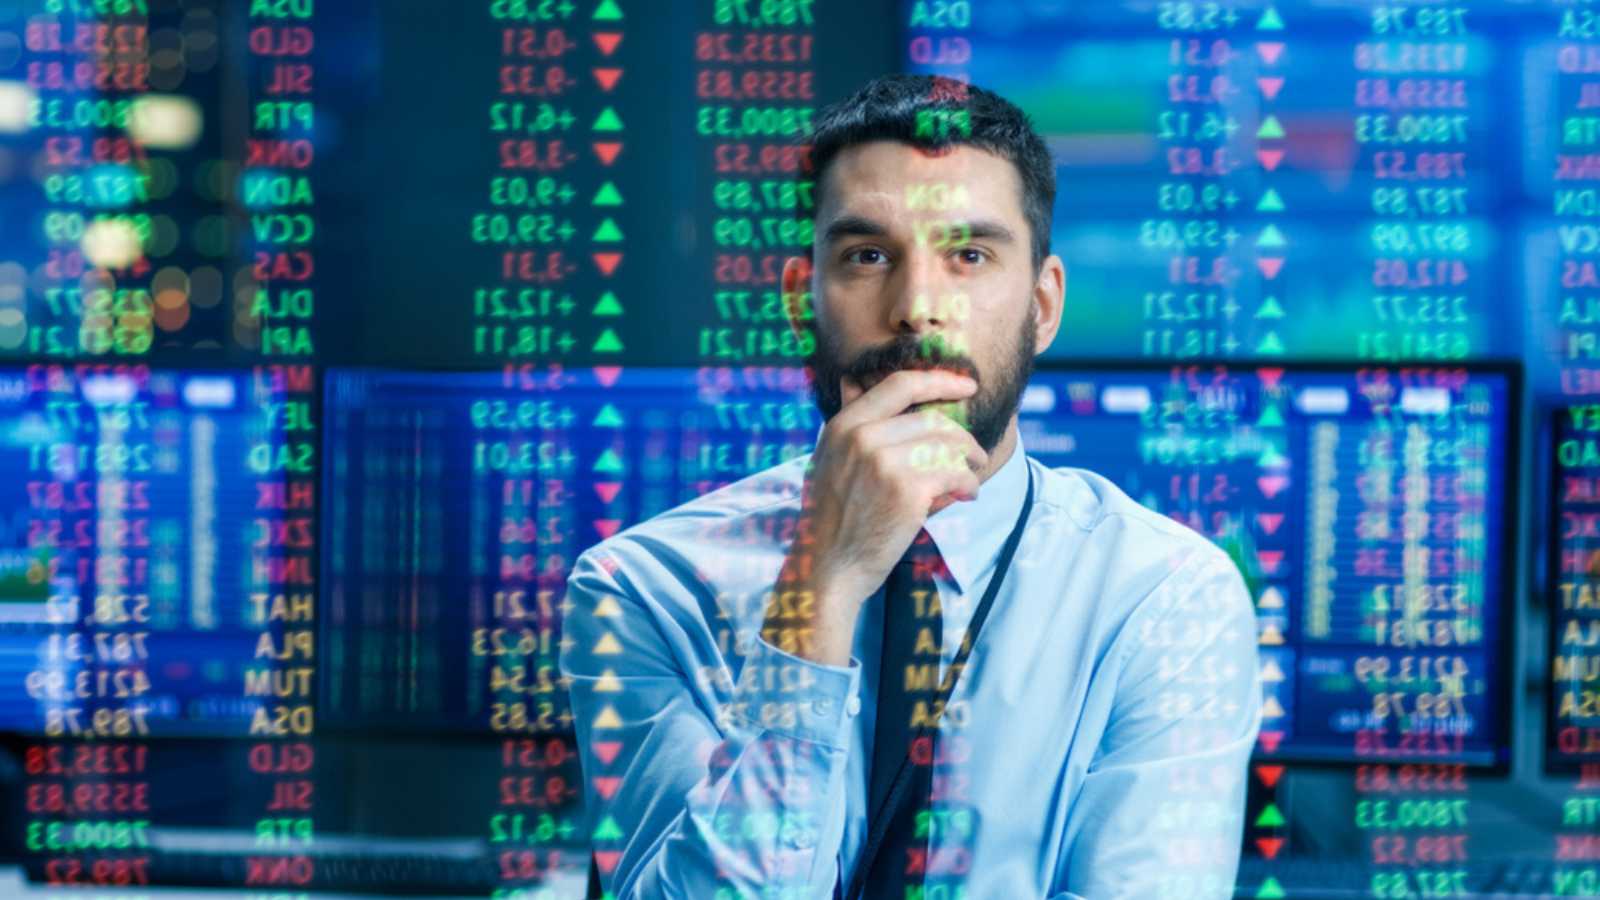 Man seeing stock market